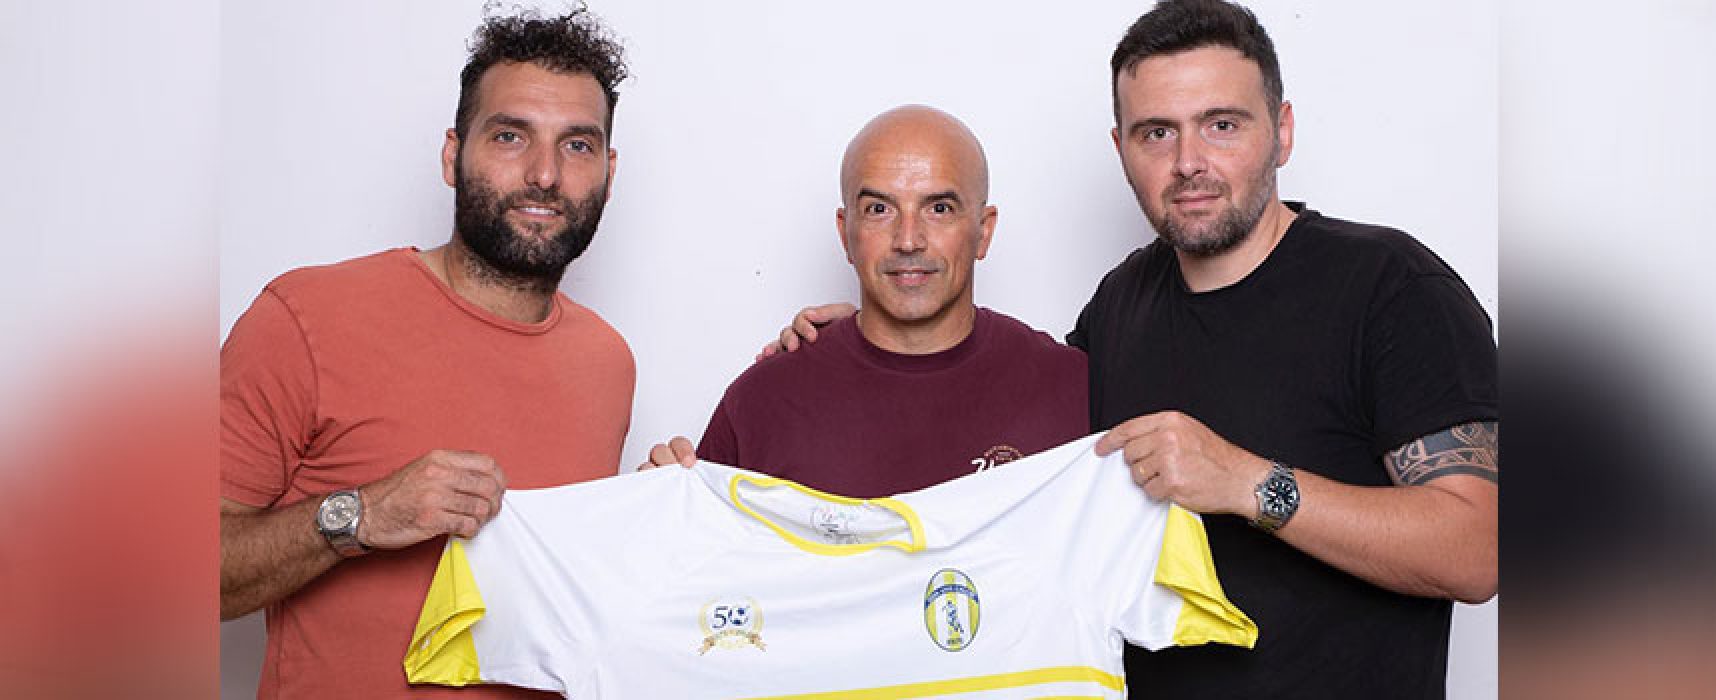 Michele Gesuito è il nuovo tecnico del Don Uva Calcio